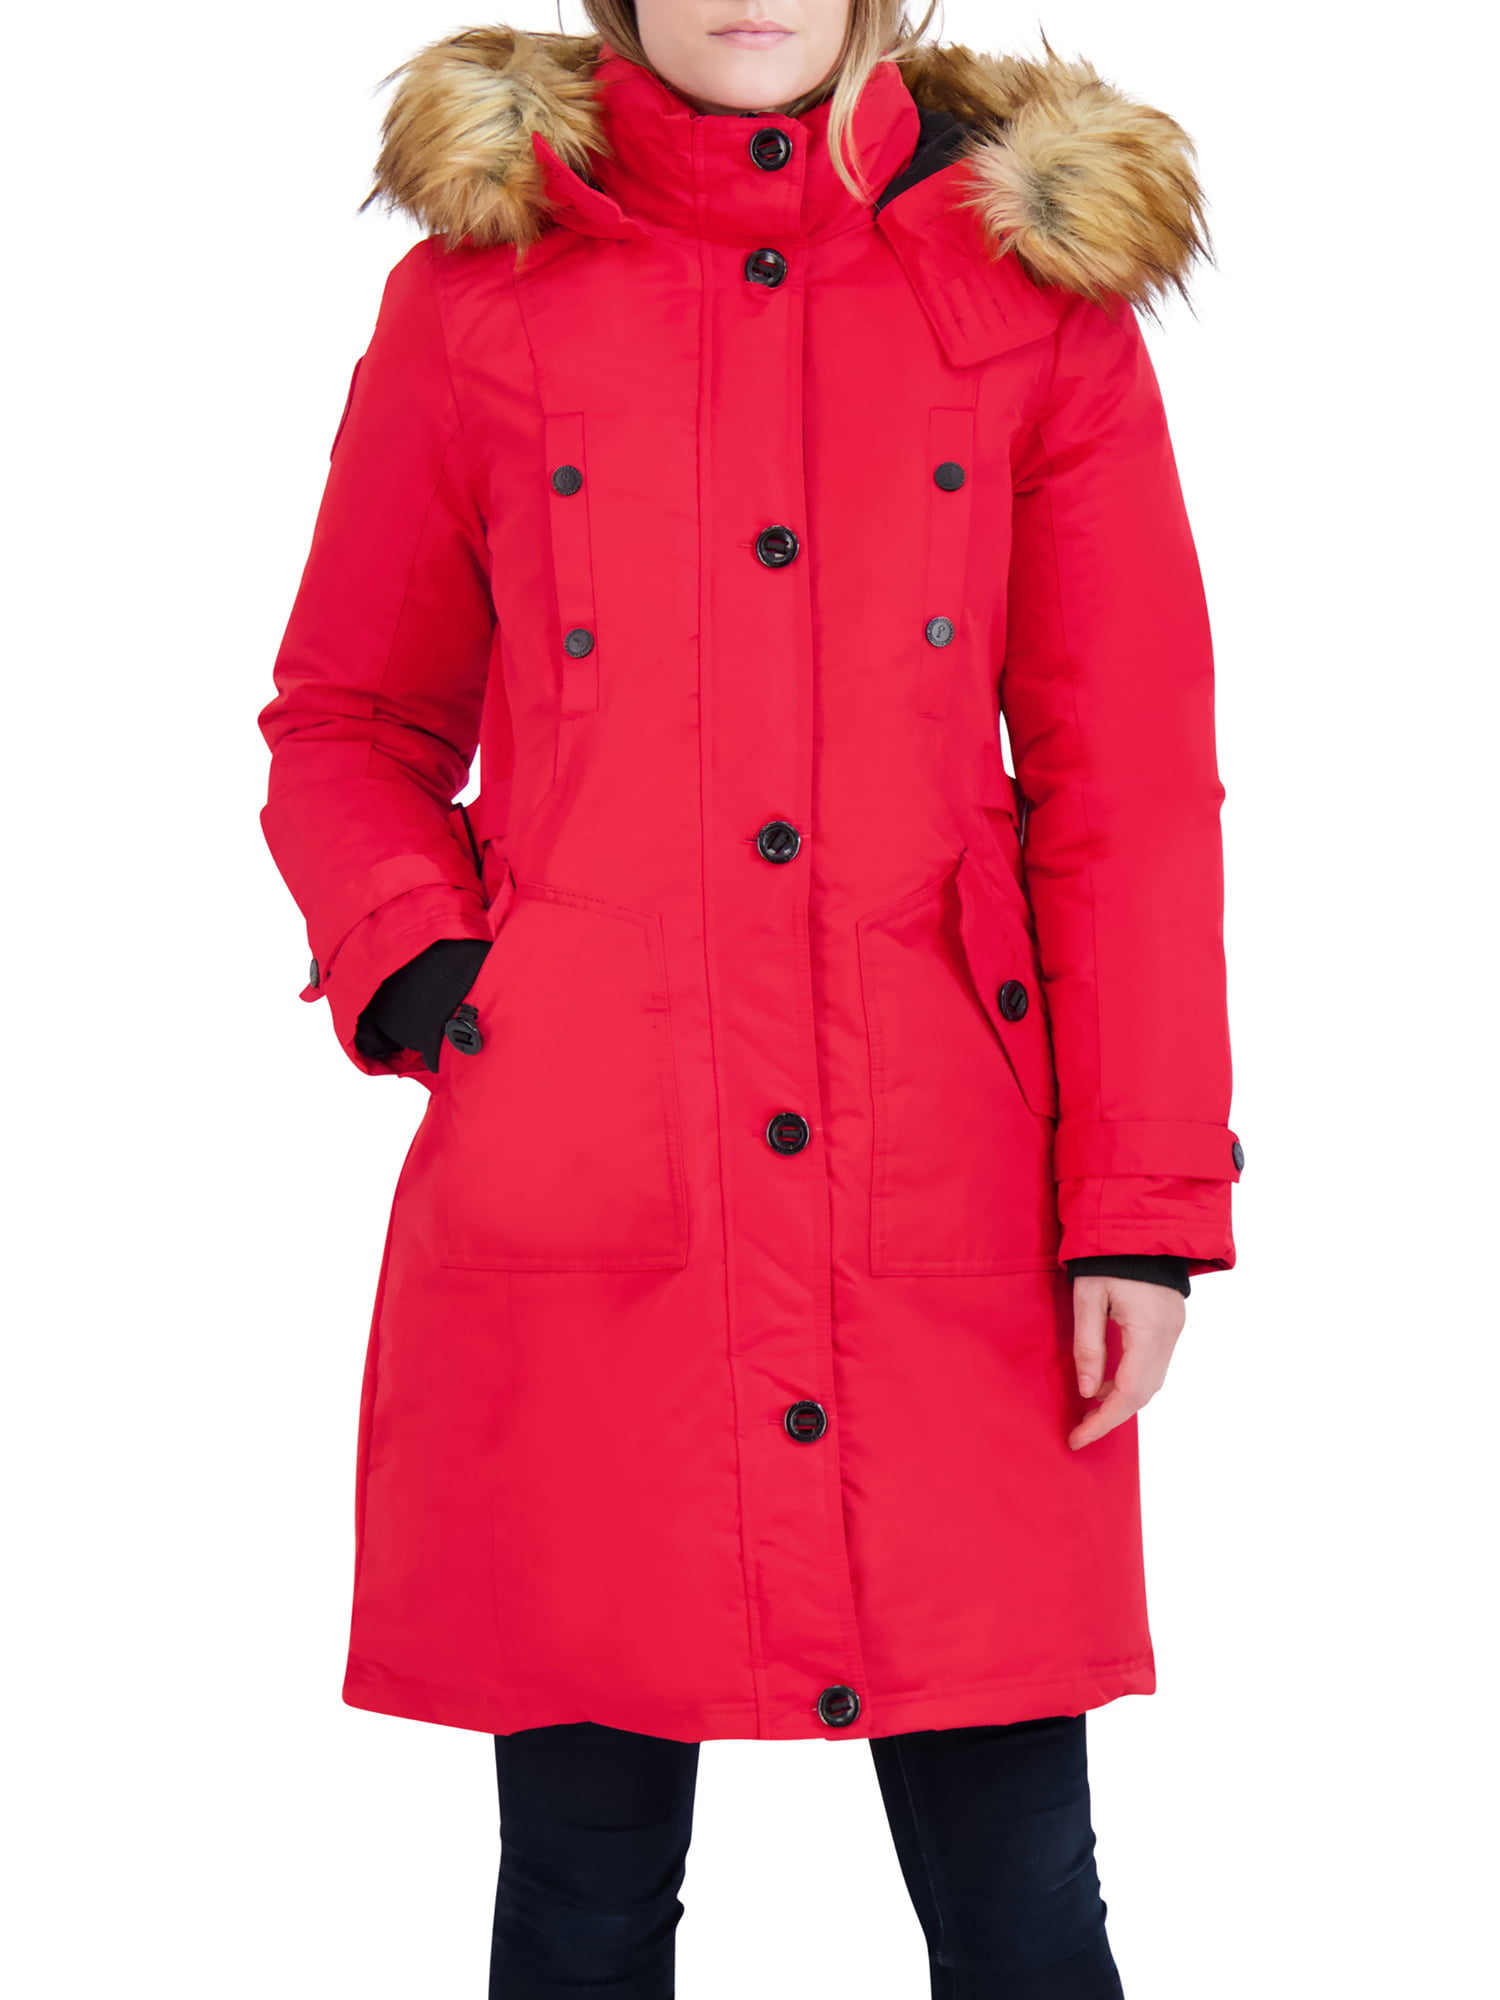 Canada Weather Gear Women S Faux Fur Hooded Parka